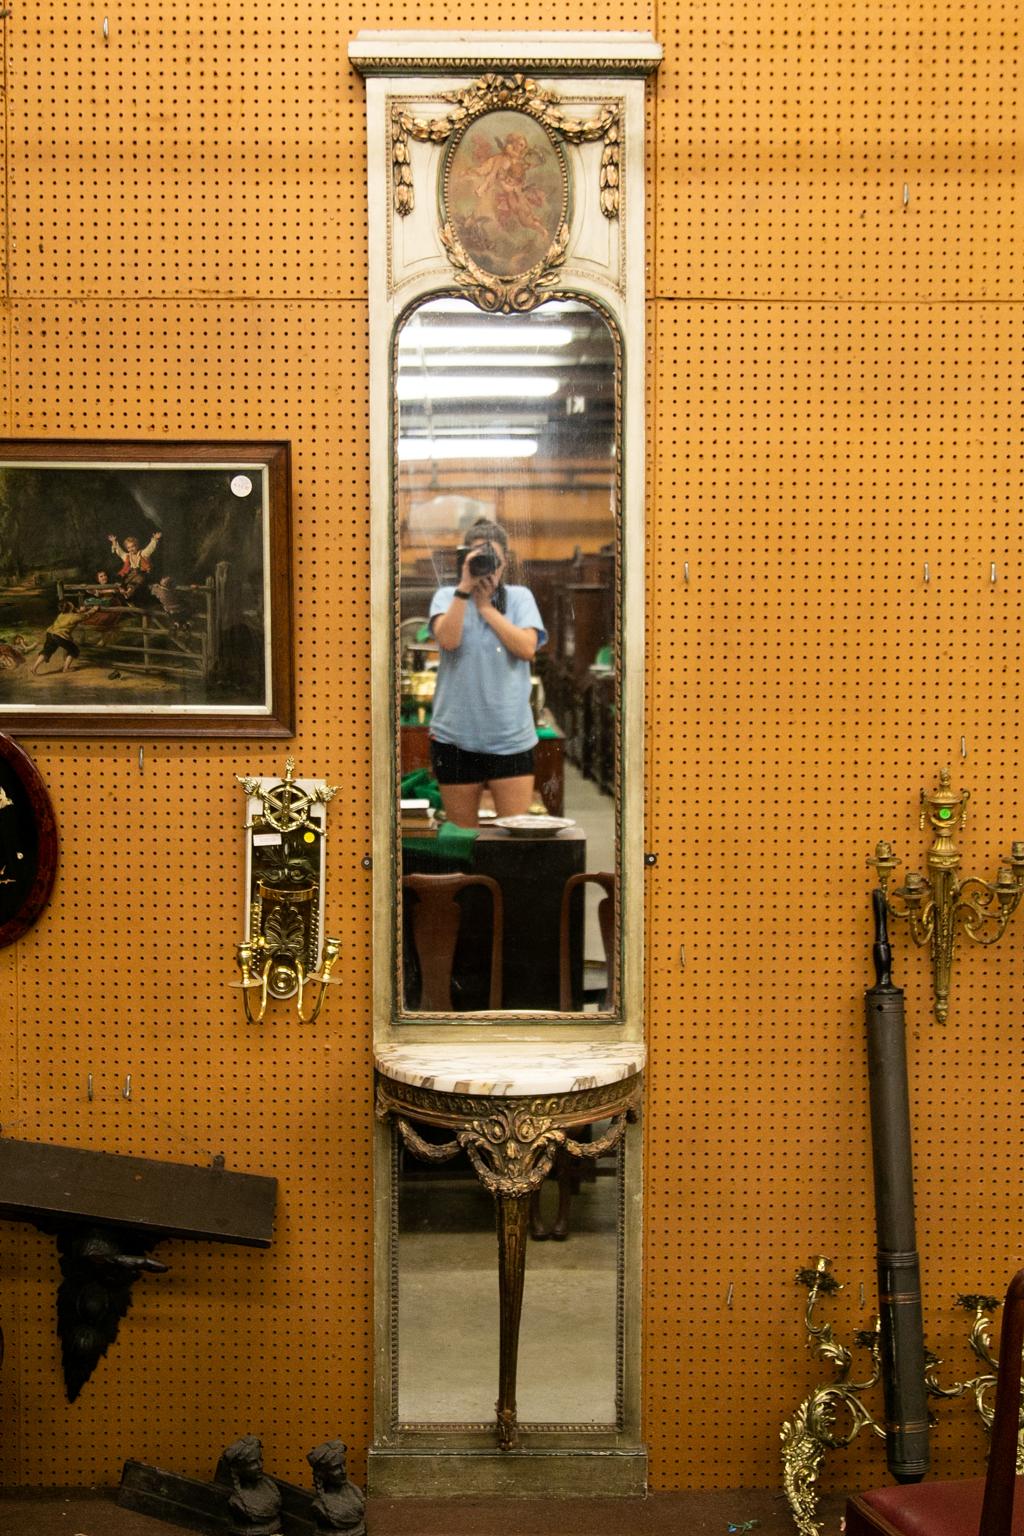 Dieser Spiegel hat ein Gesims aus Eiern und Abnähern über einer oberen Kartusche, die mit fliegenden Amoretten bemalt ist, umrahmt von floral geschnitzten Schwänzen. Der obere Spiegel ist mit einem sich wiederholenden geschnitzten Spiegel umrahmt.